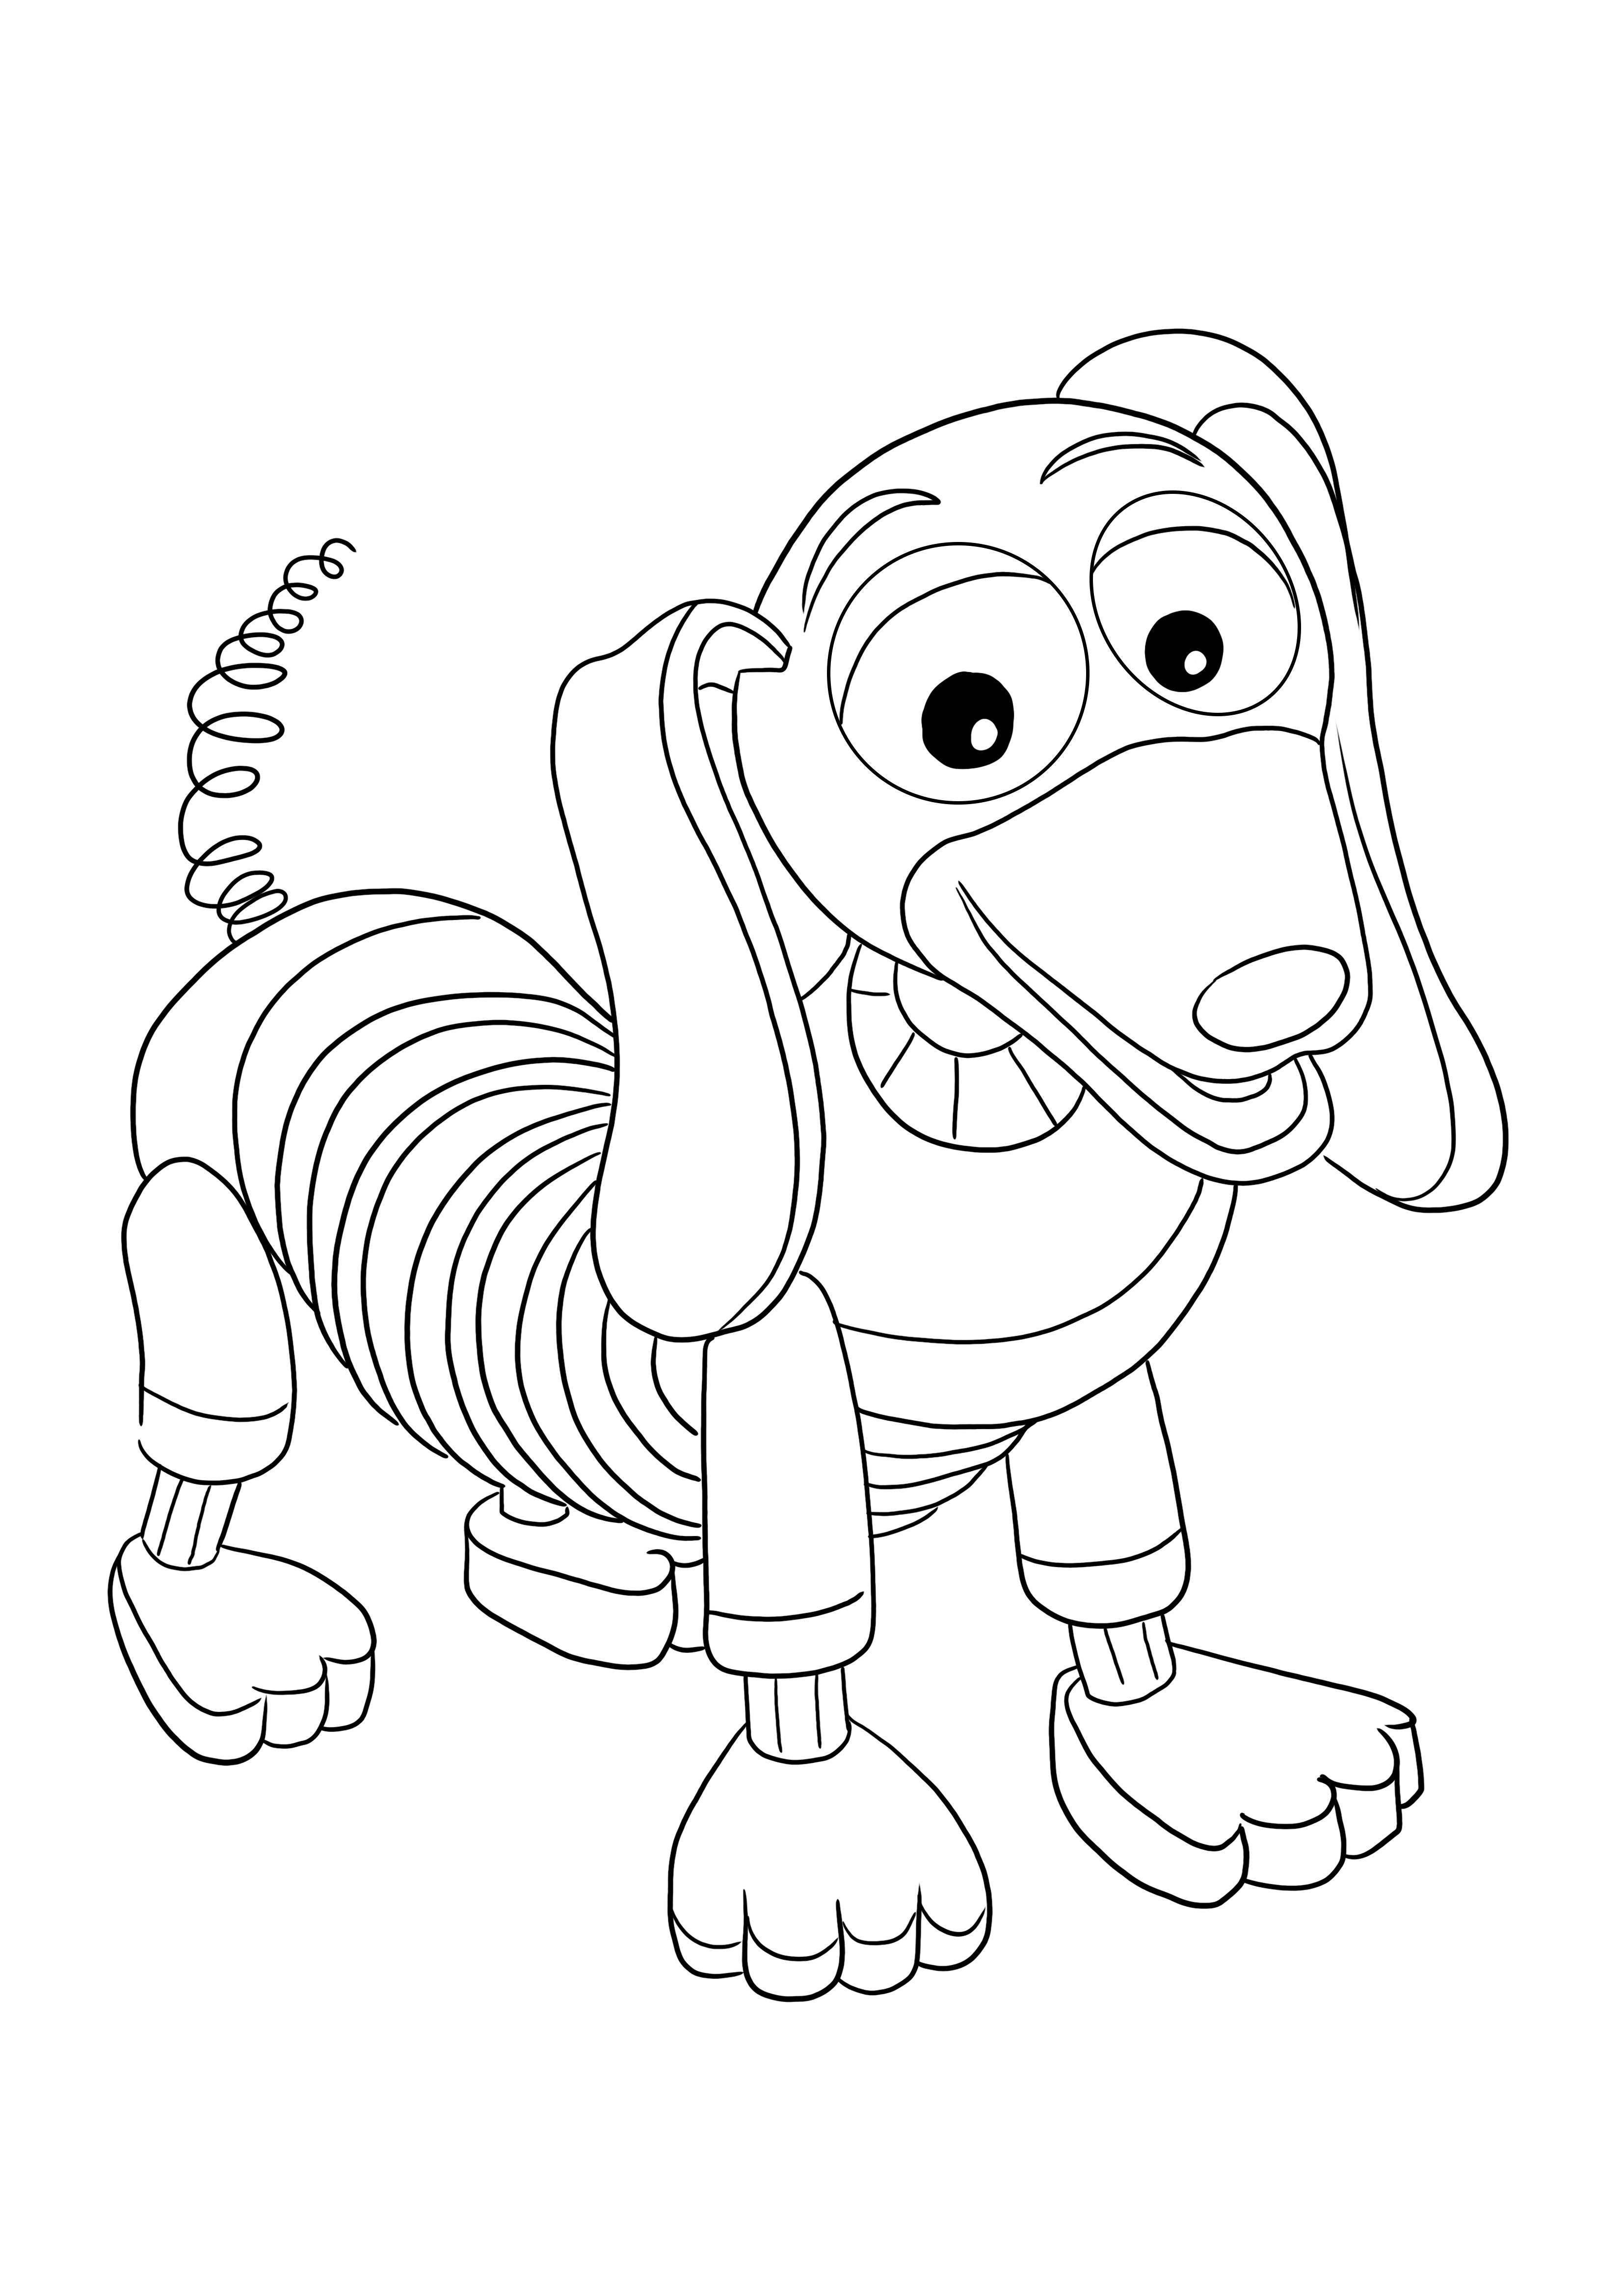 Slinky Dog voor gratis printen en kleurplaten voor kinderen van alle leeftijden kleurplaat